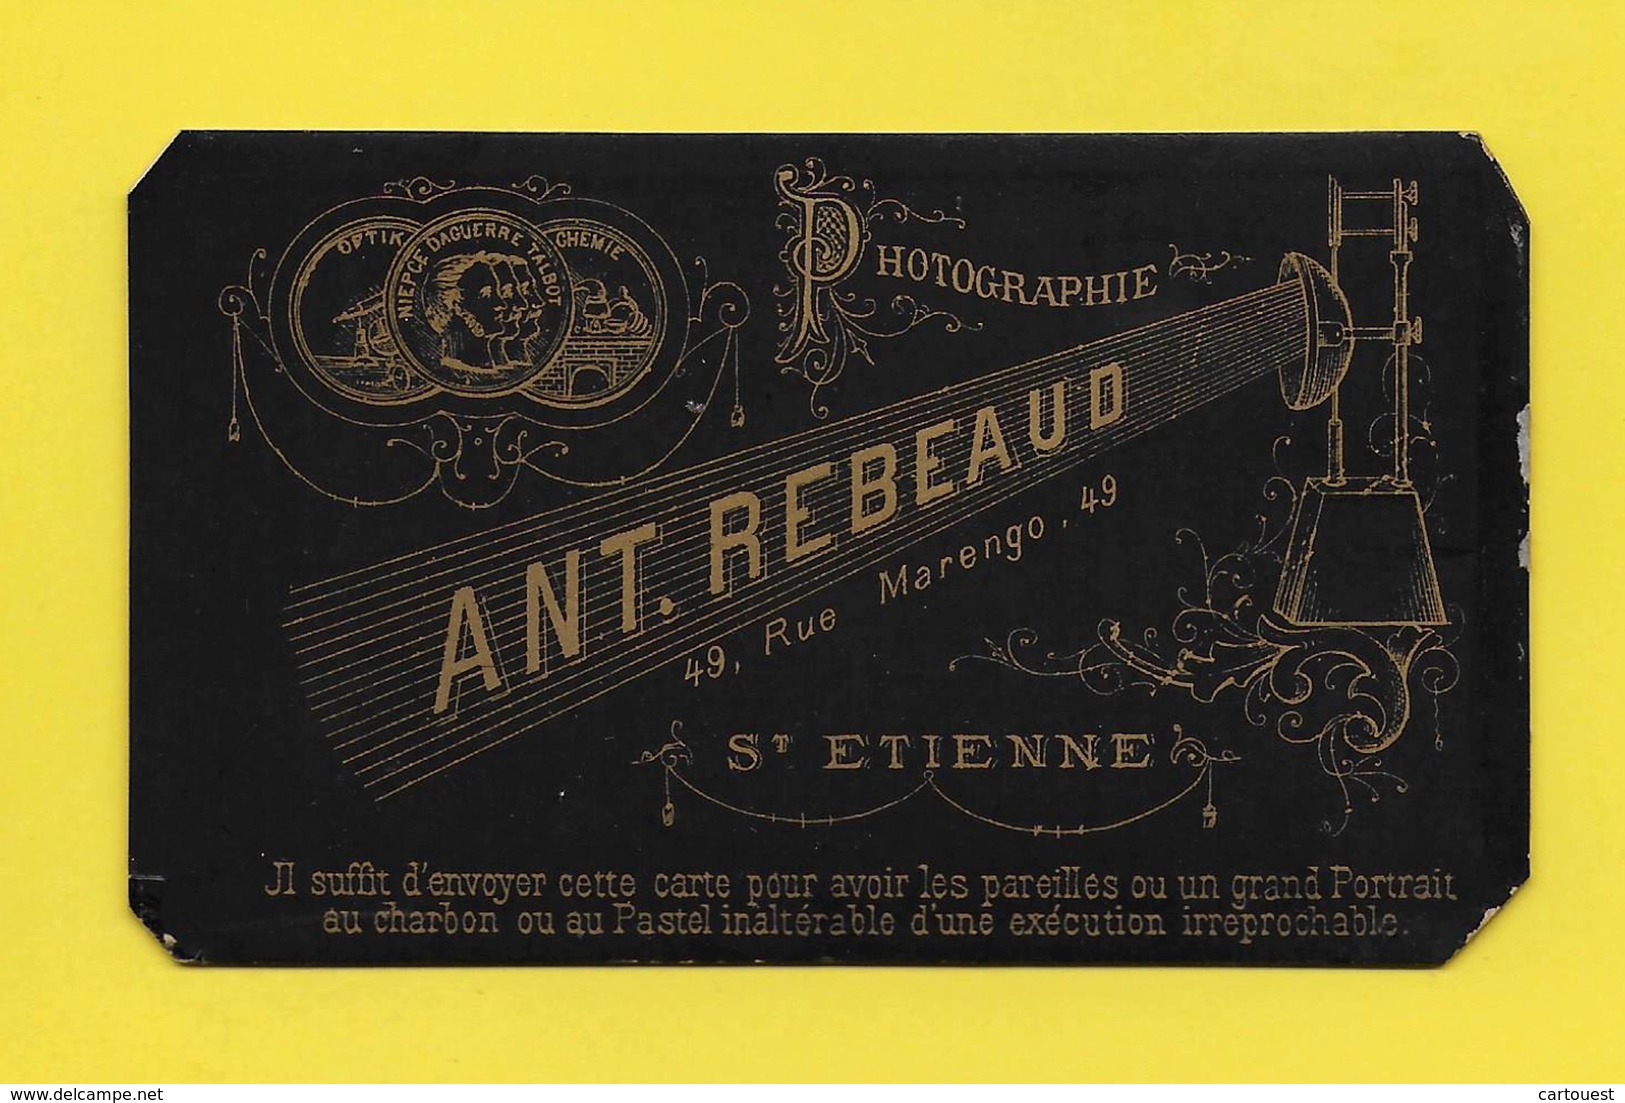 ֎ Photo Albuminée ֎ CDV 19 Eme ֎ Portrait Femme ֎ Saint Etienne Photographique Artistique Ant. REBEAUD, 49 Rue Marengo ֎ - Old (before 1900)